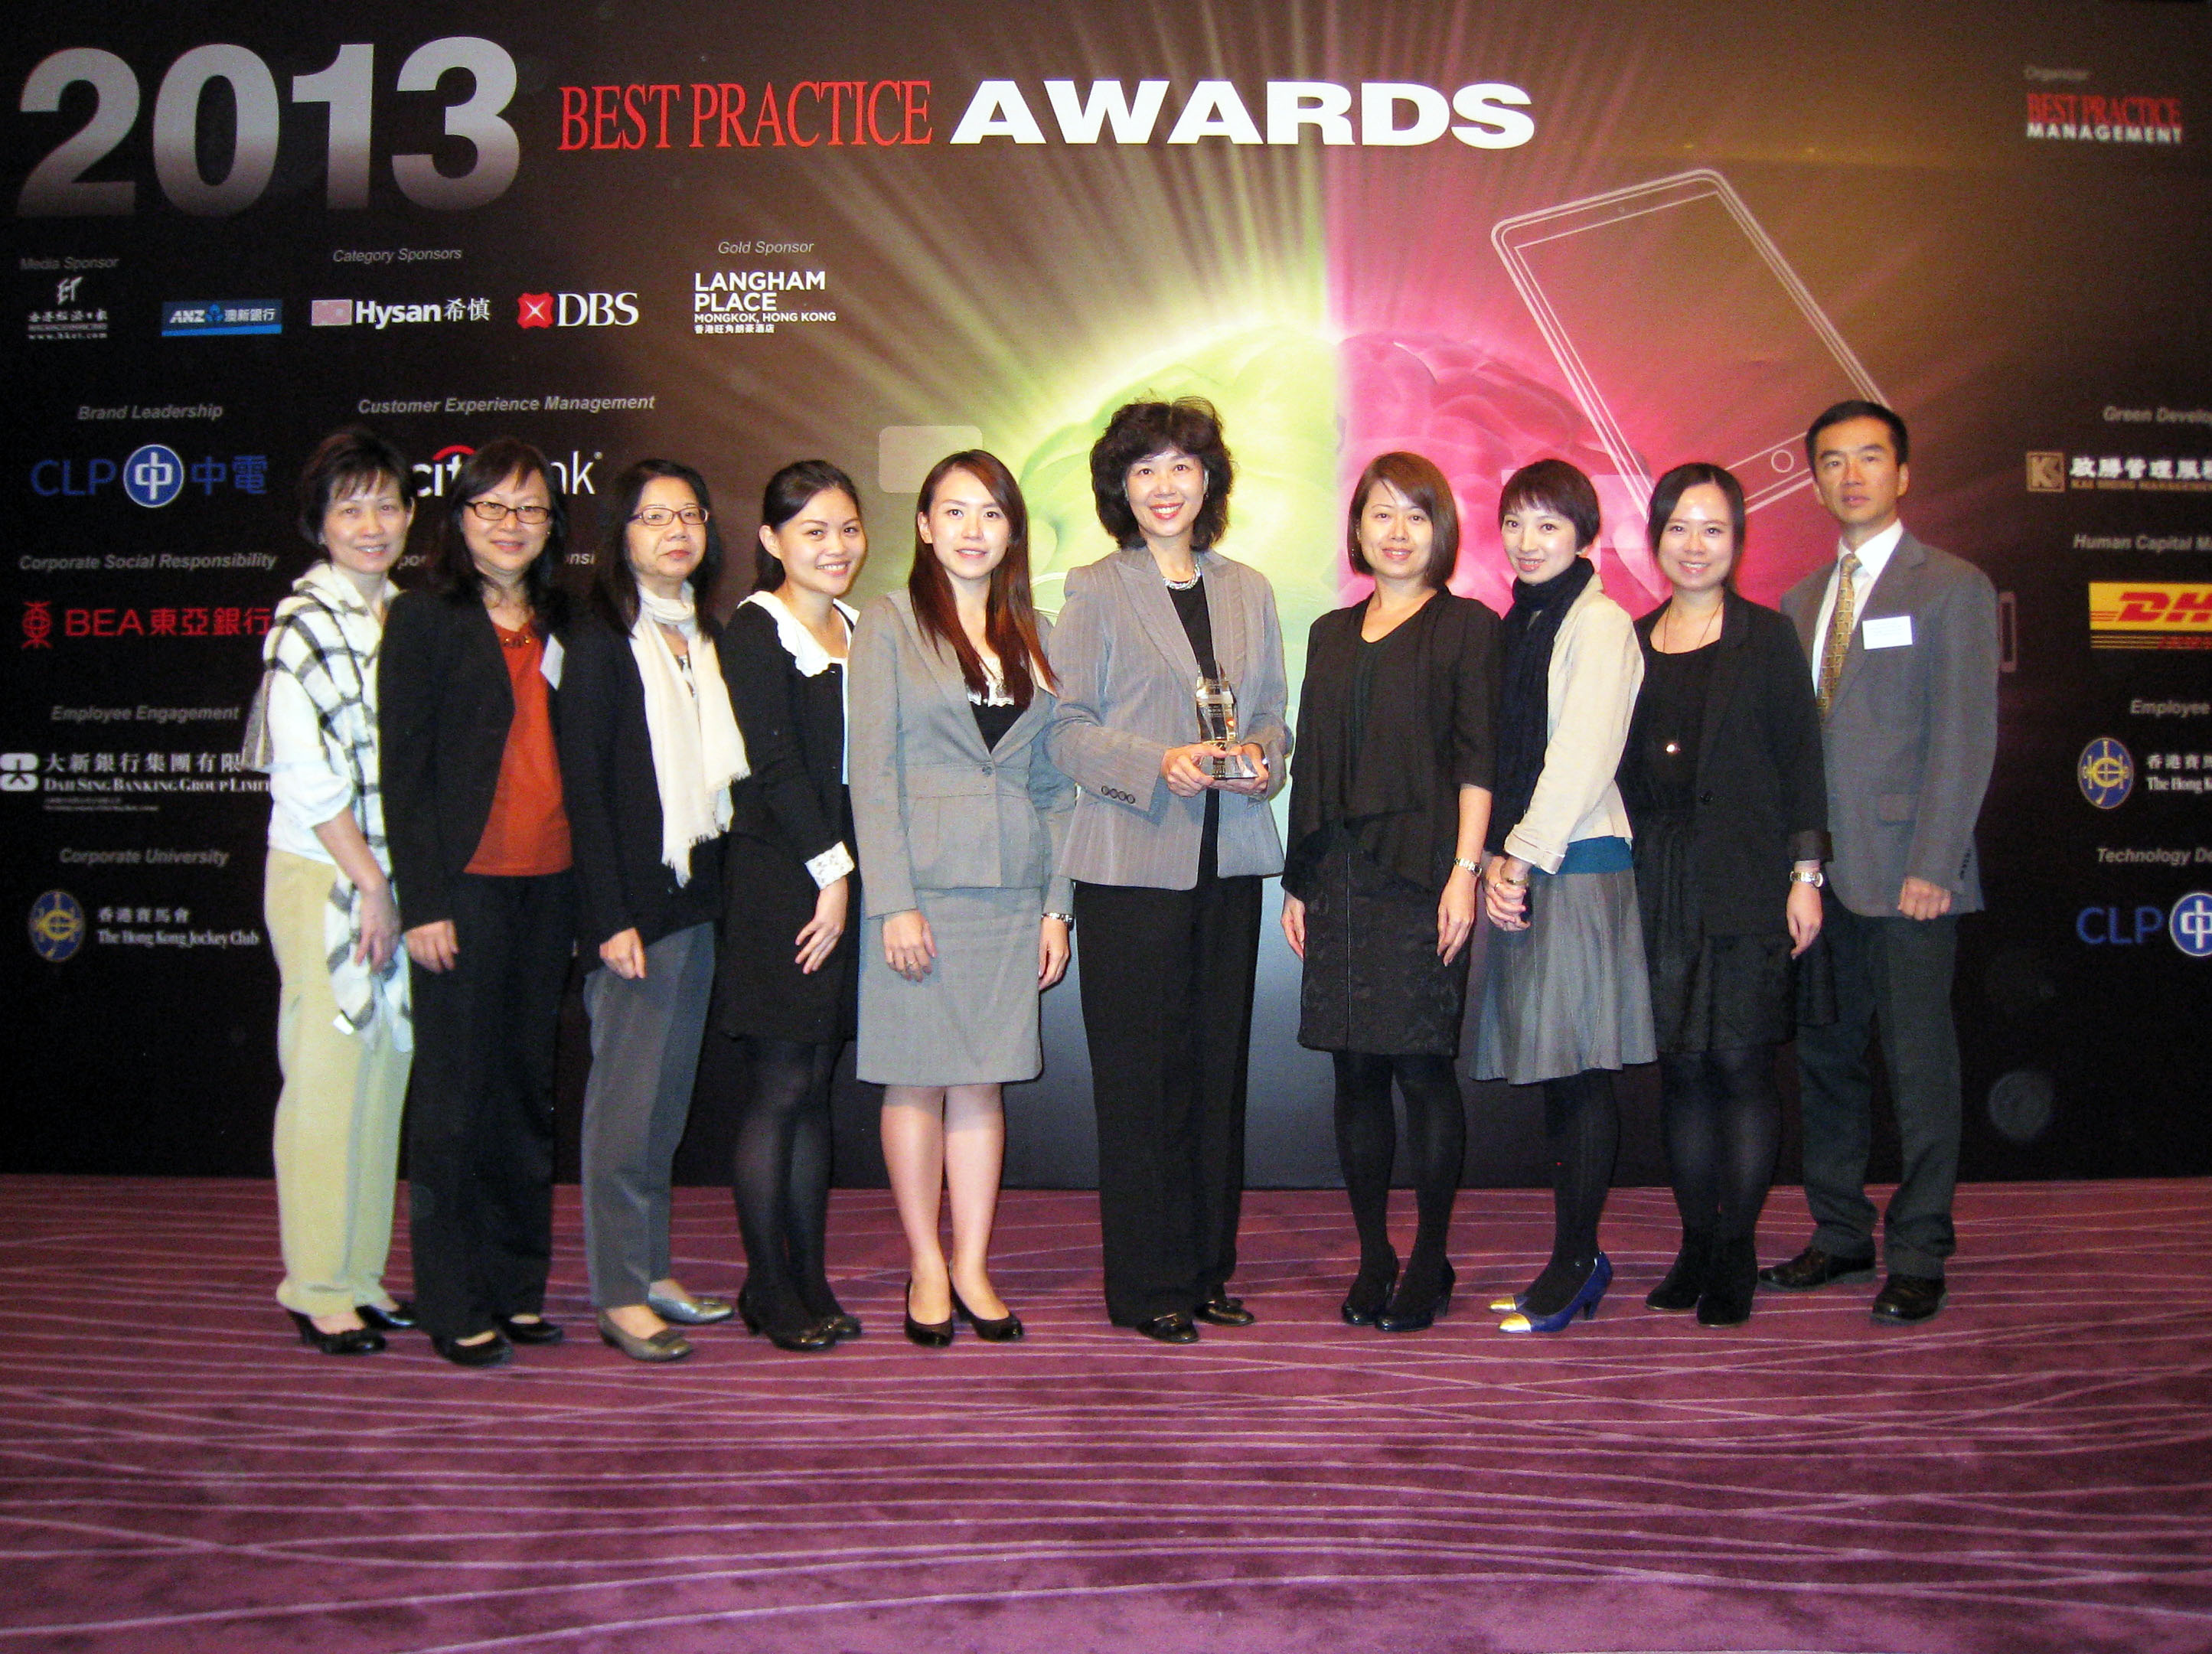 新創建集團人力資源榮獲「2013最佳業務實踐獎」 